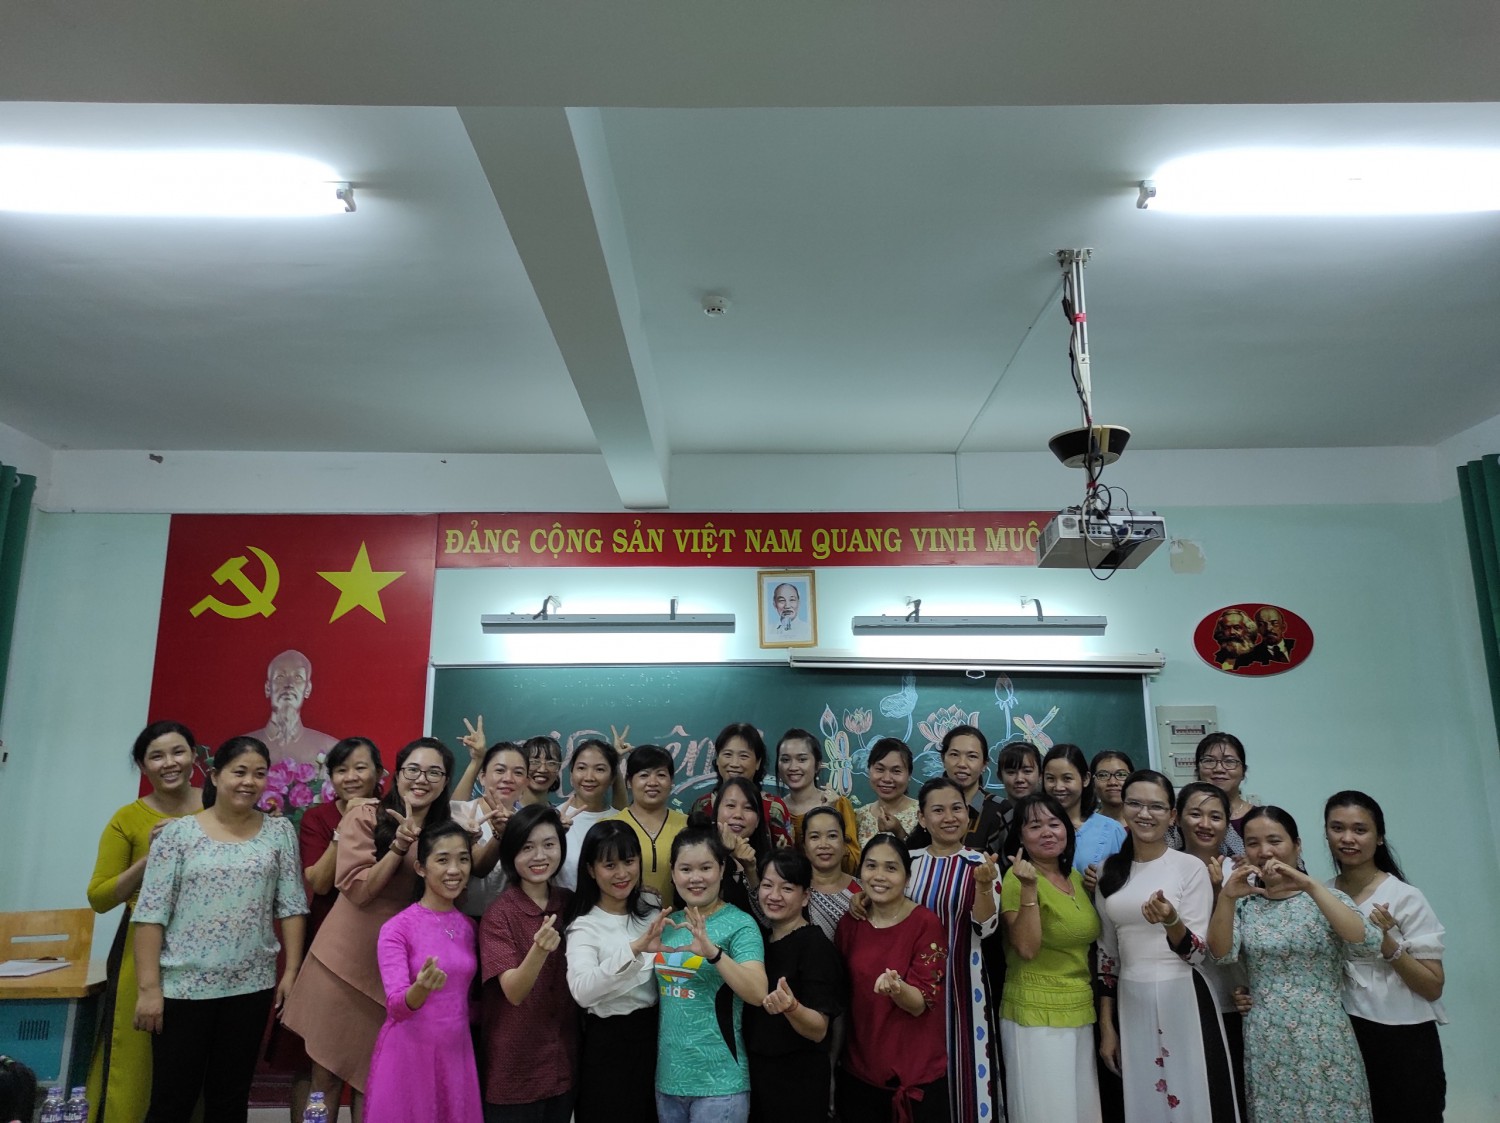 Lễ kỷ niệm 90 năm ngày thành lập Hội Liên hiệp phụ nữ Việt Nam (20/10/1930 - 20/10/2020).